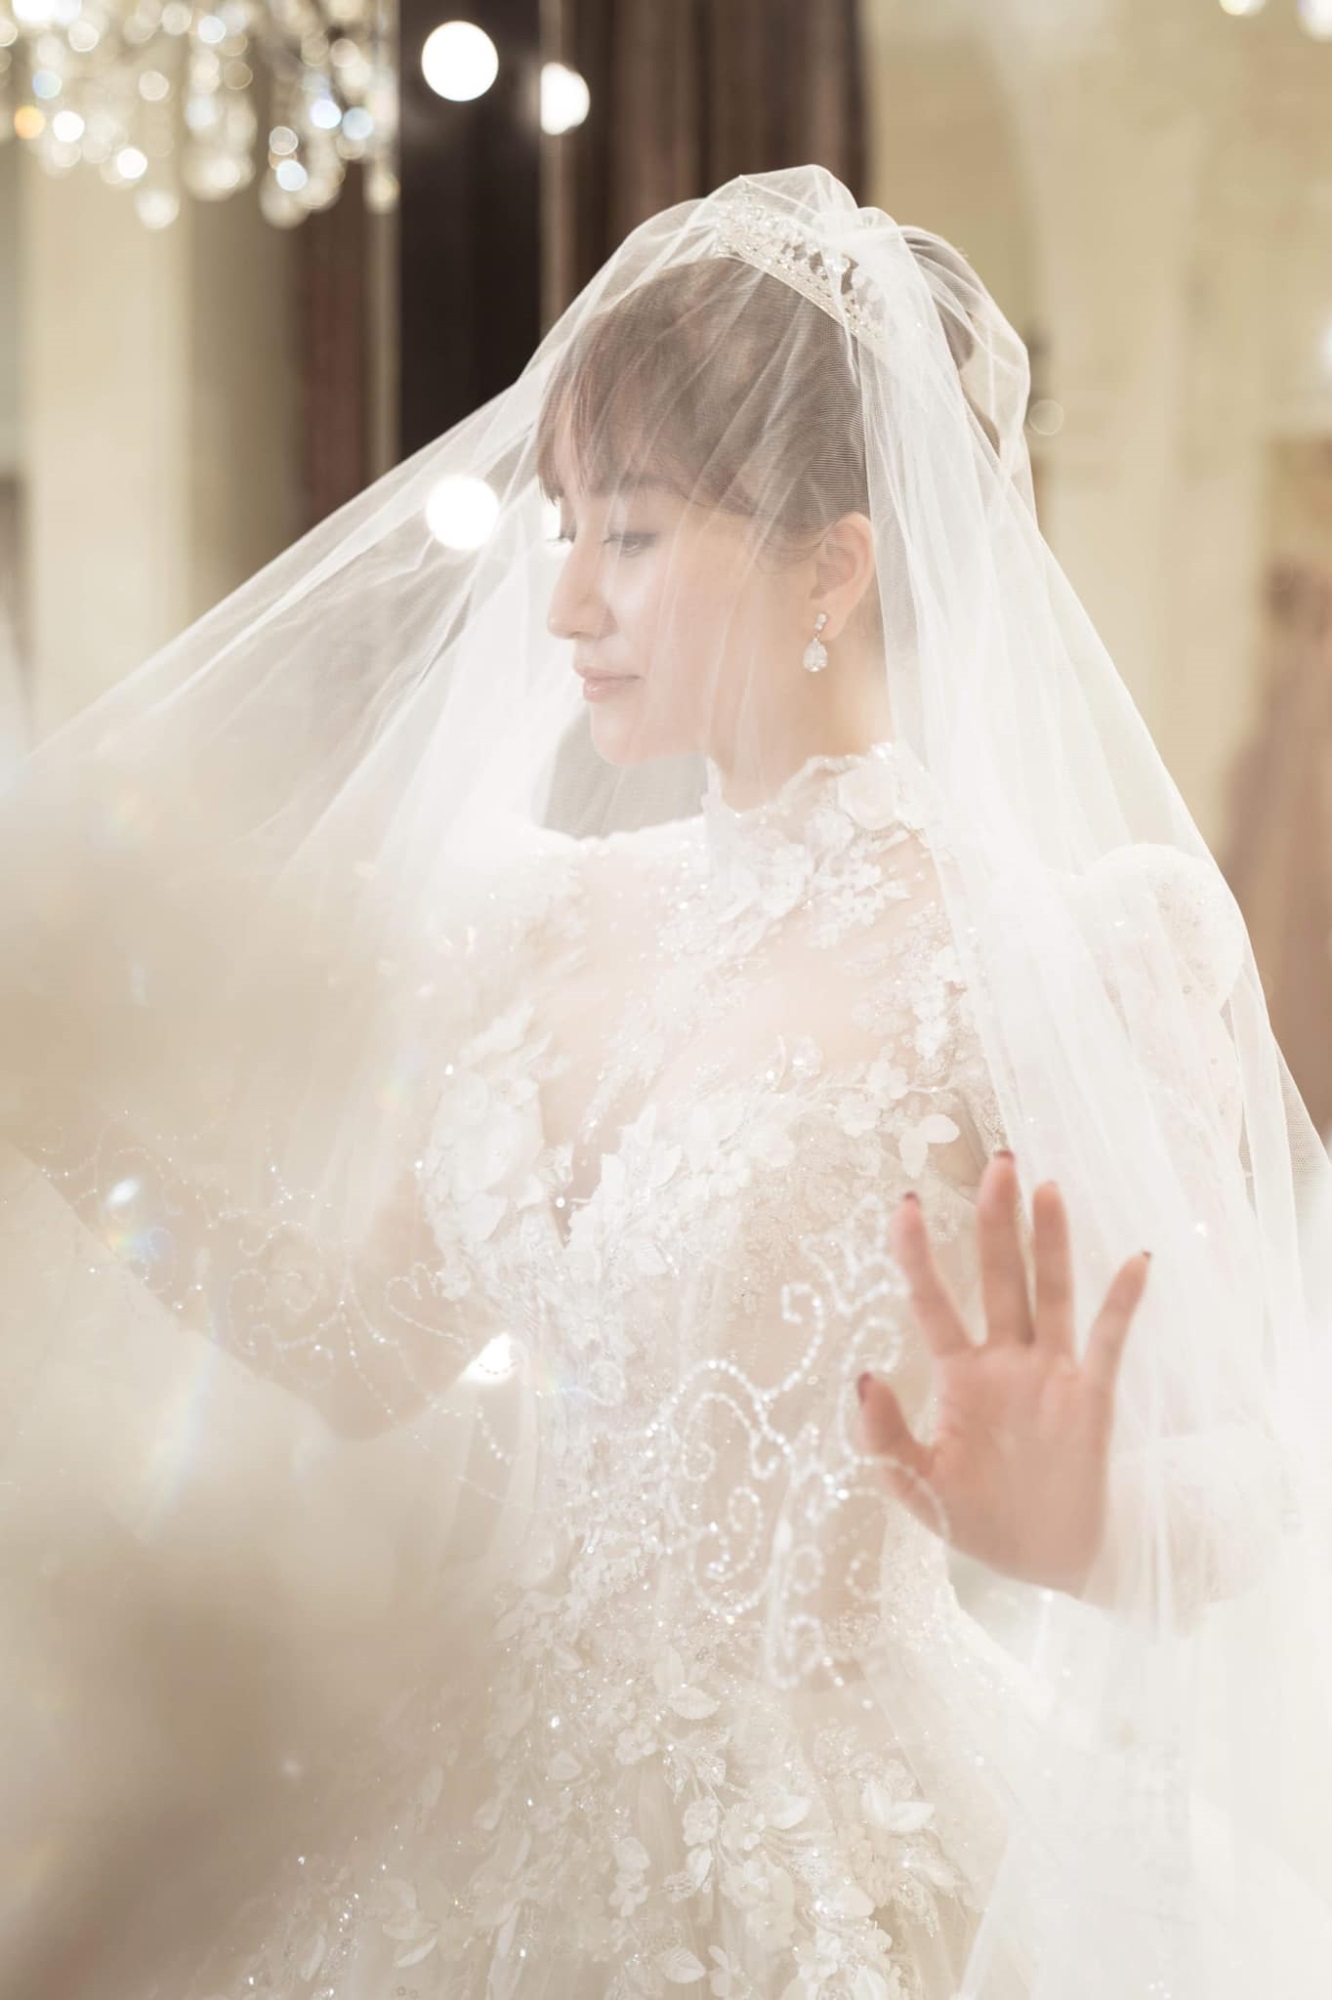 'Nhá hàng' ảnh Khánh Thi diện váy trắng, Phan Hiển úp mở về 'đám cưới bí mật' khiến dân tình xôn xao - Ảnh 2